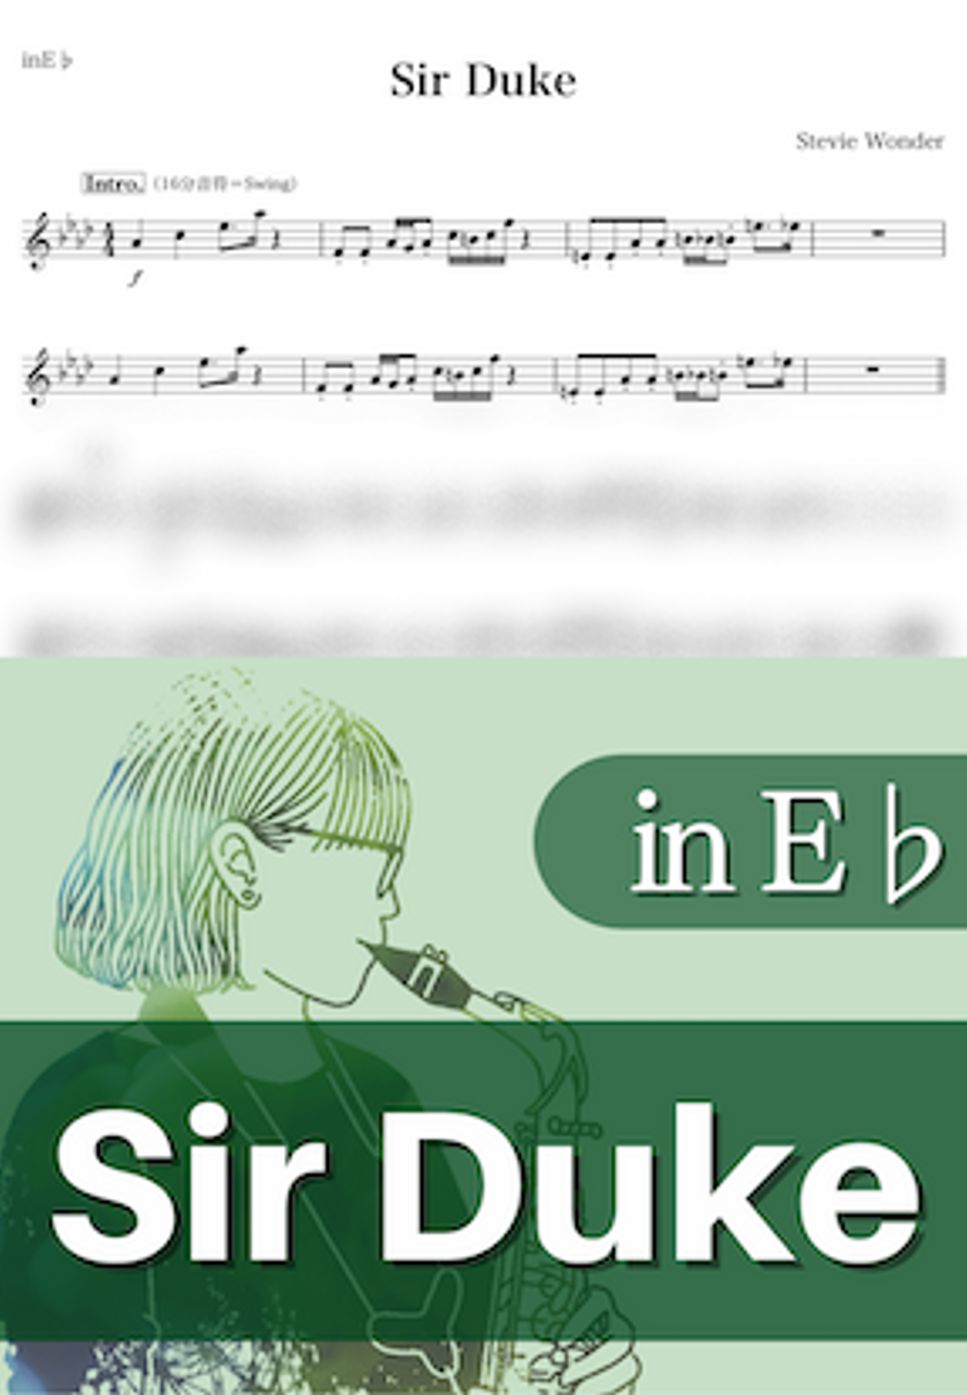 Stevie Wonder - Sir Duke (E♭) by kanamusic